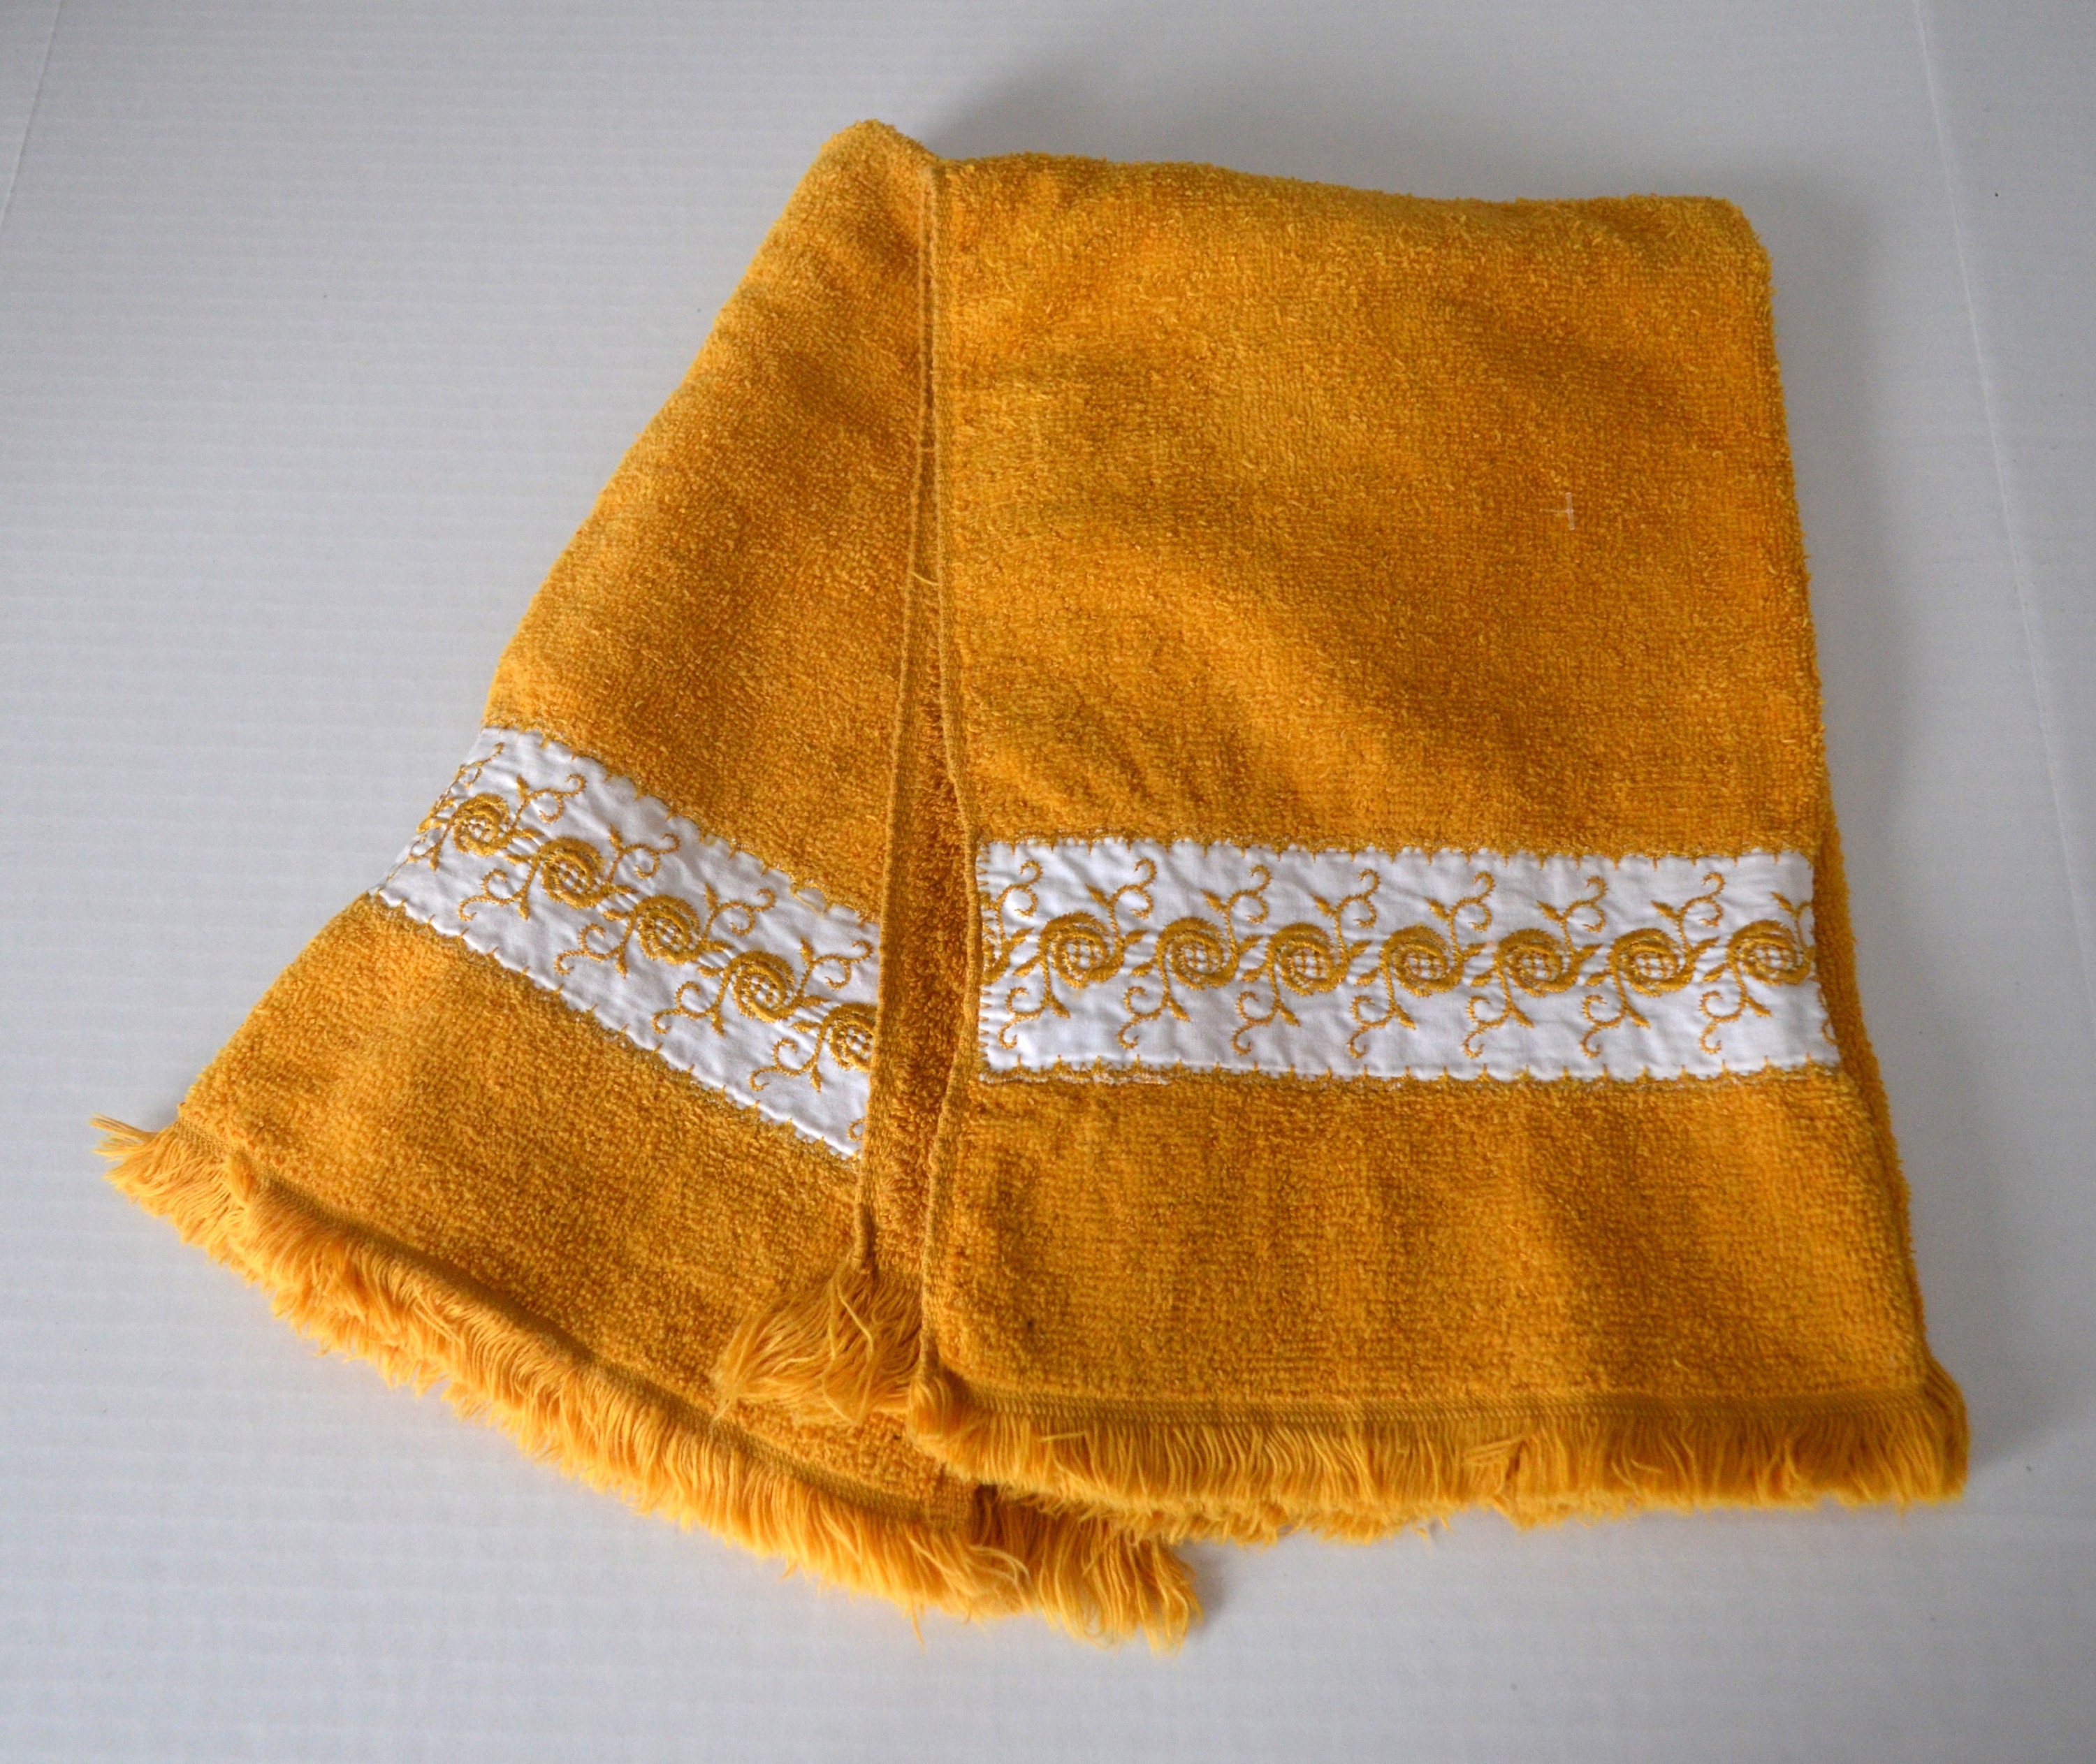 Wamsutta Bath Towel Egyptian Cotton 30 x 56 in Dove Gray